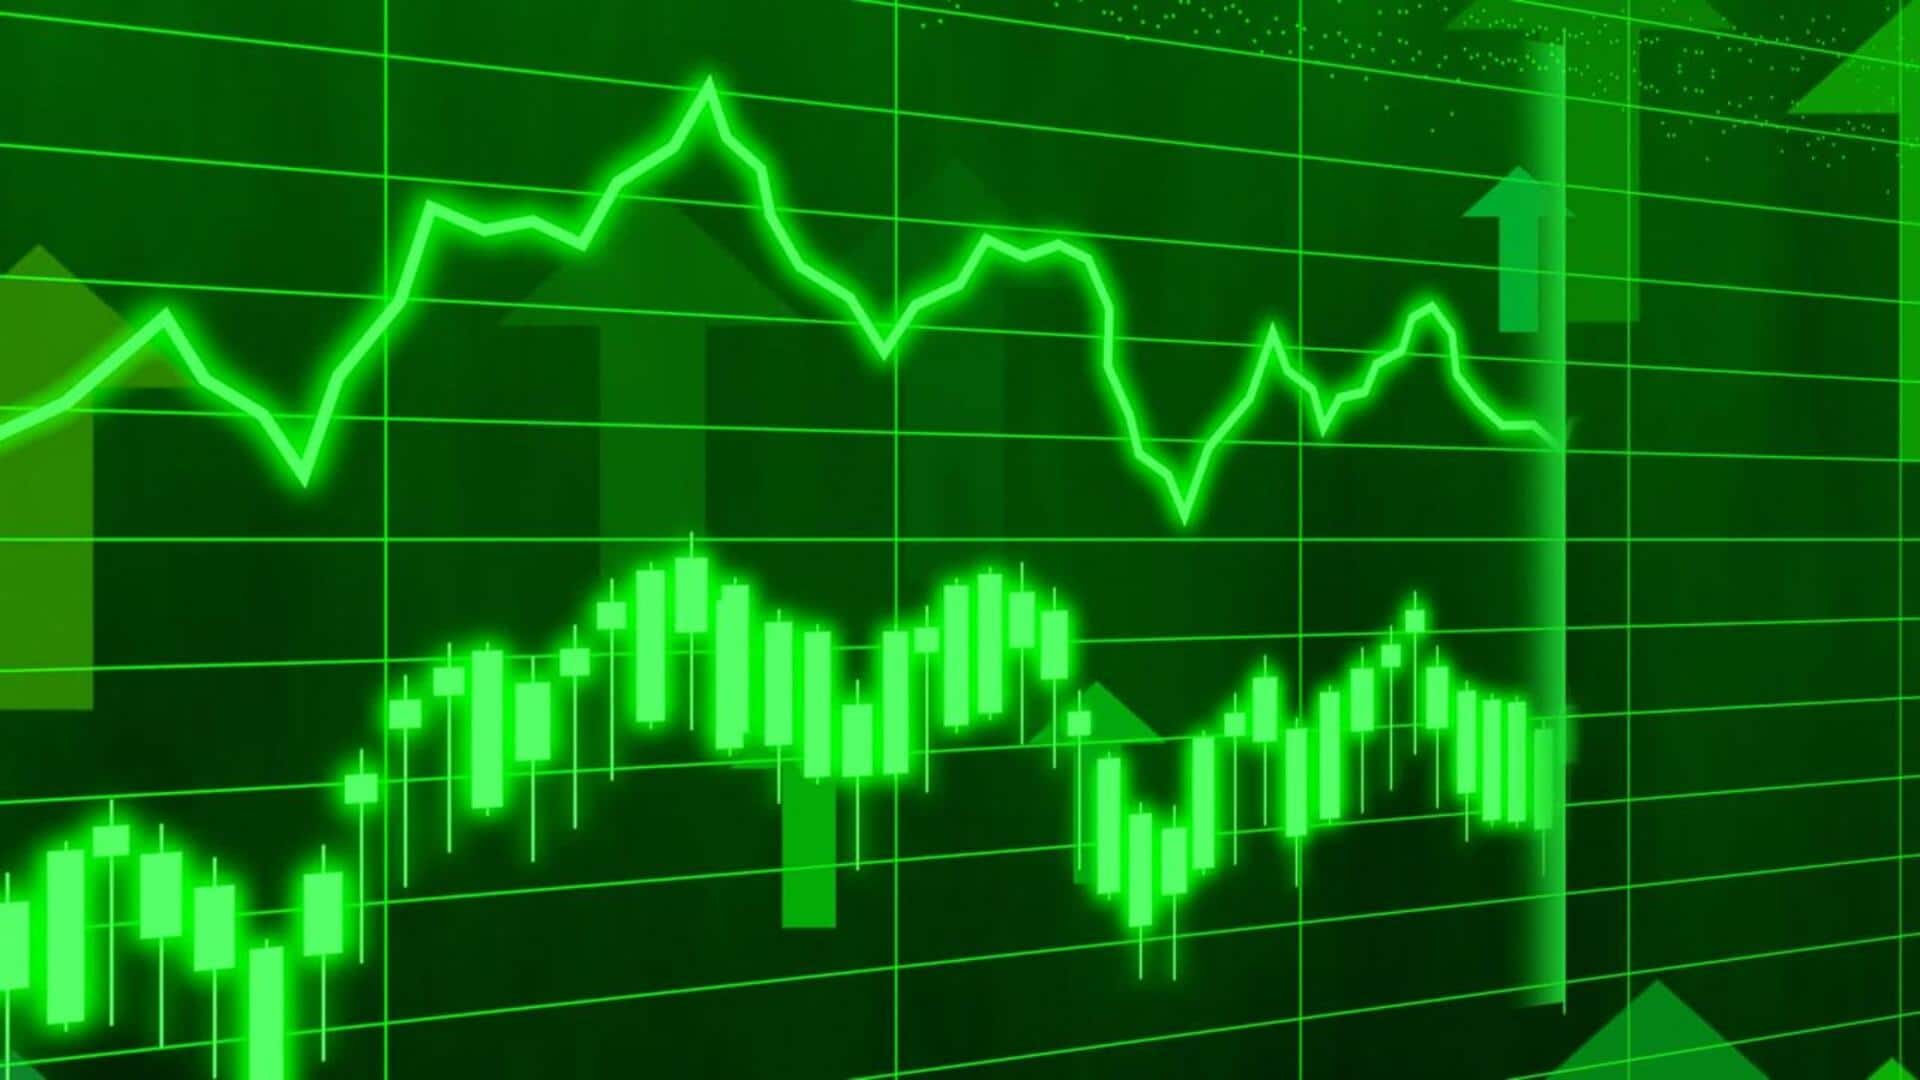 शेयर बाजार: सेंसेक्स 138 अंक ऊपर चढ़ा, निफ्टी में भी दर्ज हुई बढ़त 